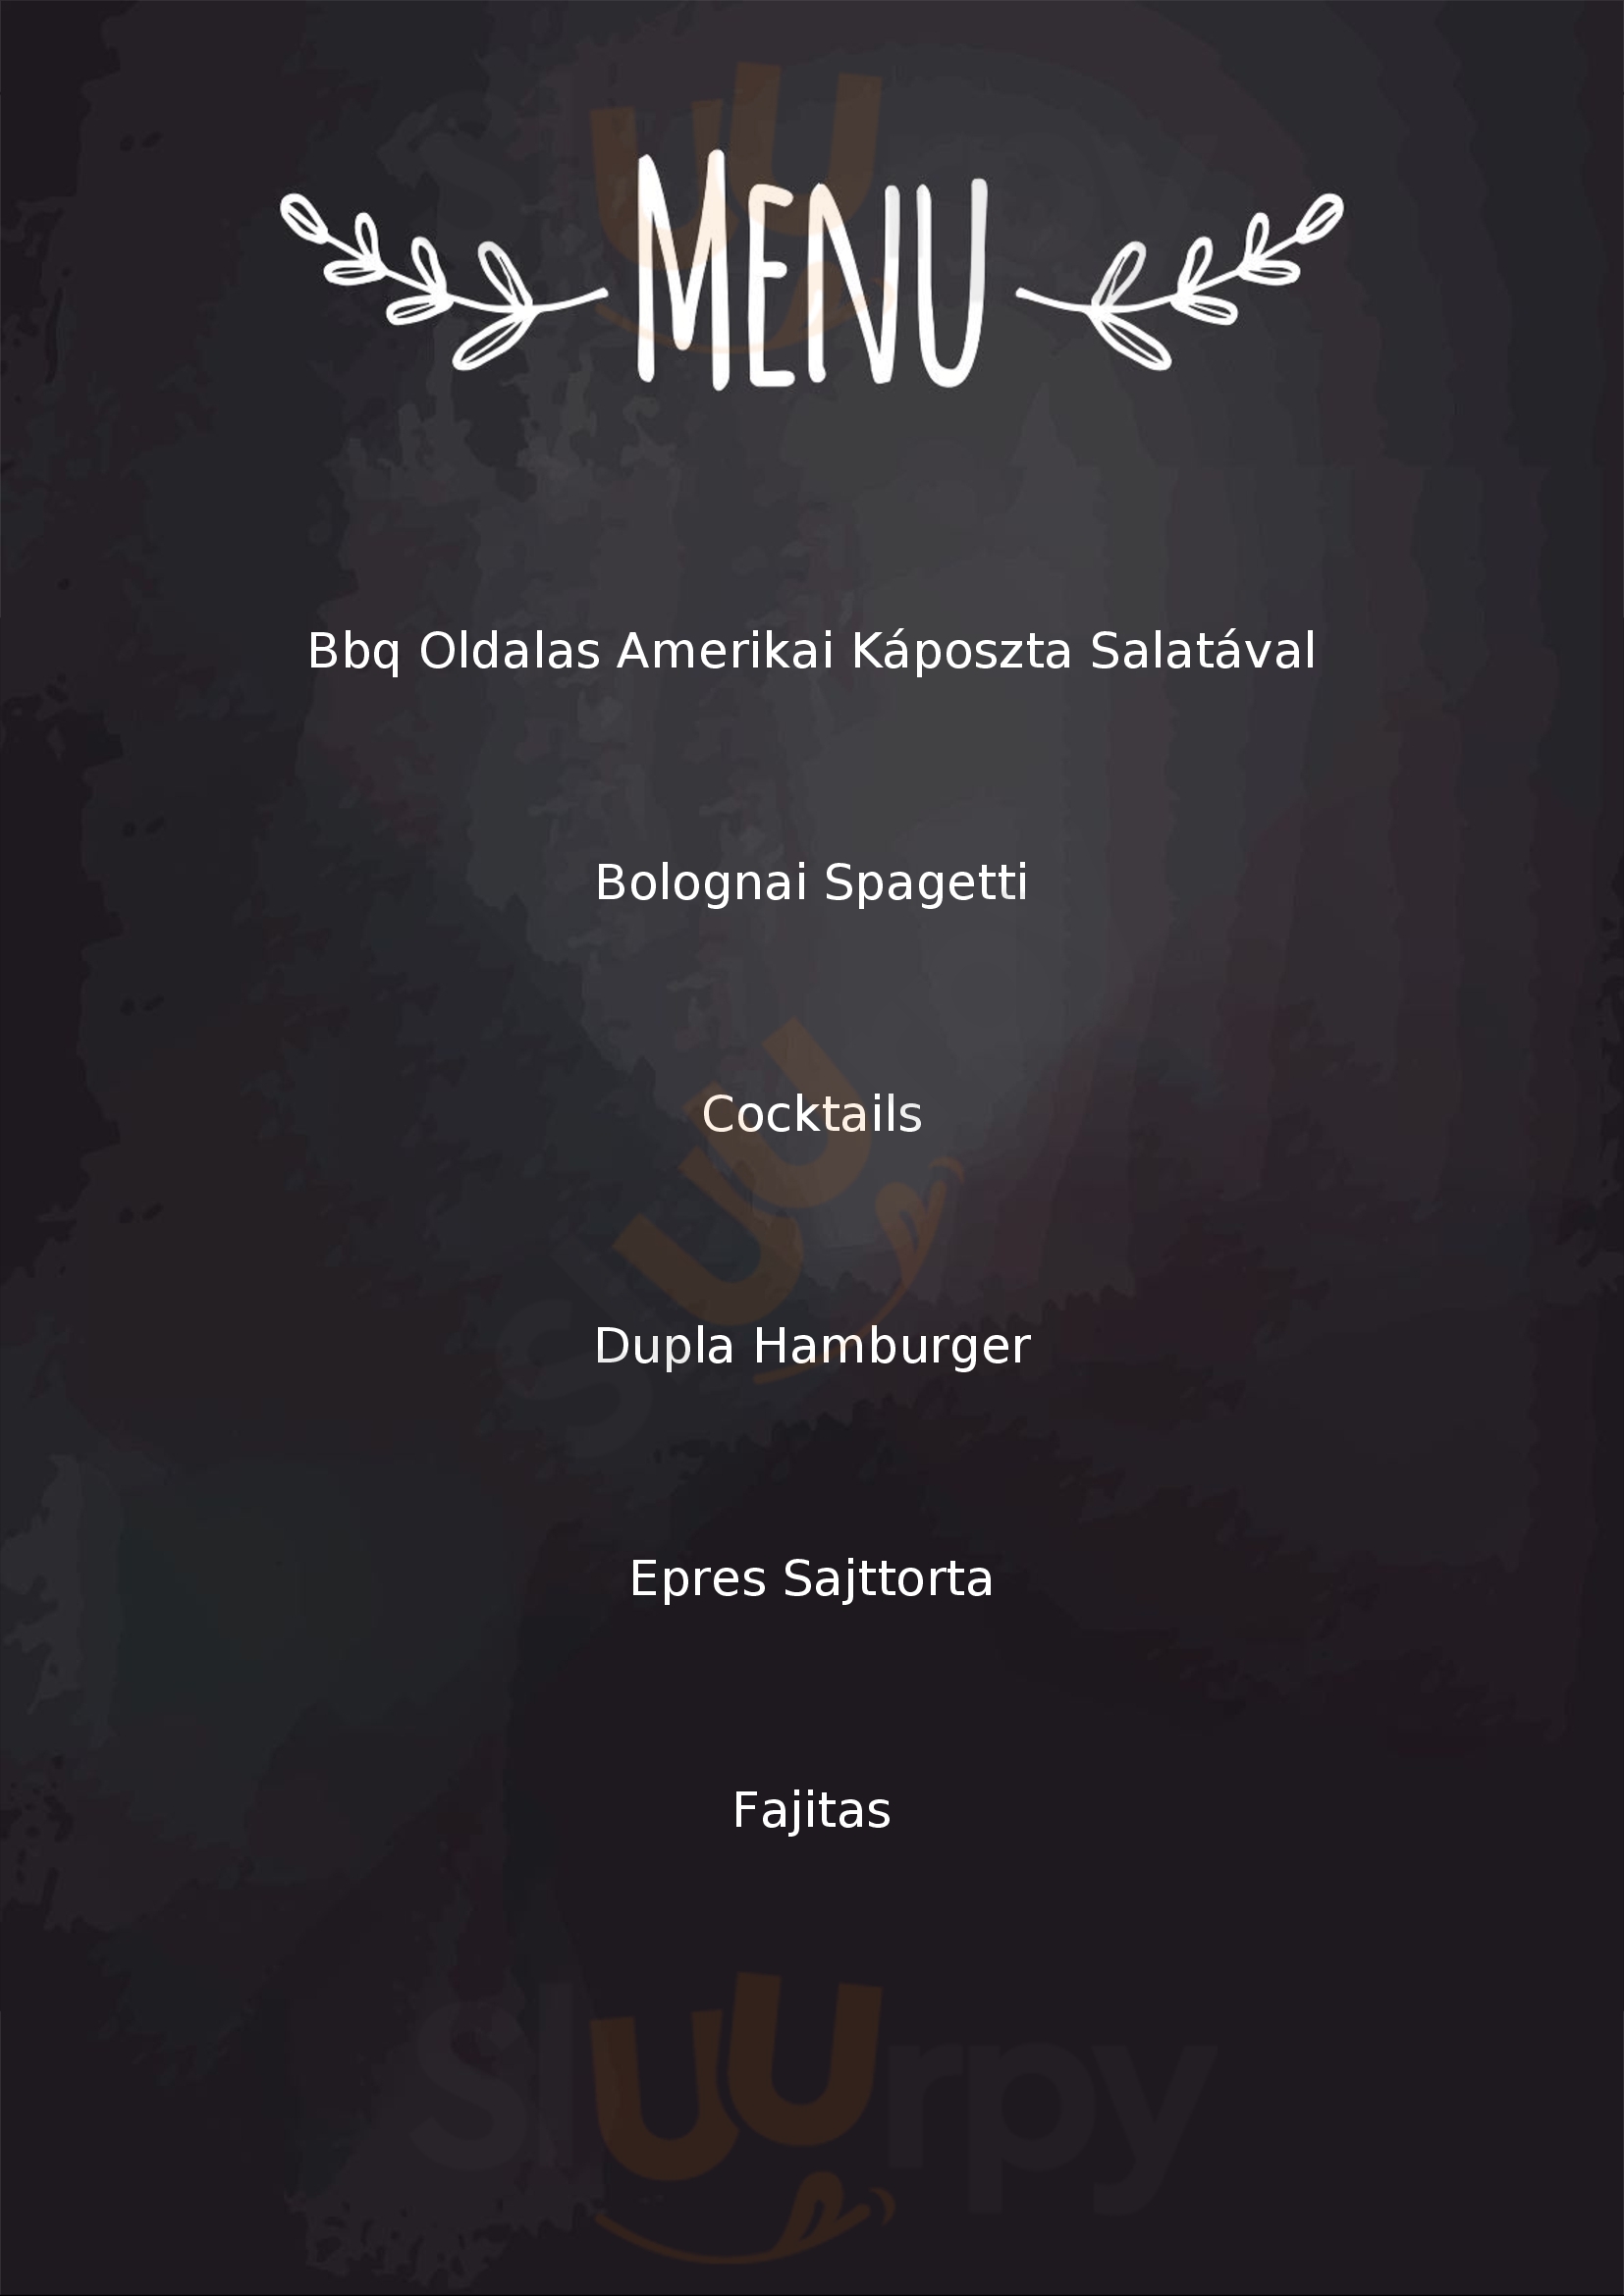 Replay Cafe & Restaurant Pécs Menu - 1